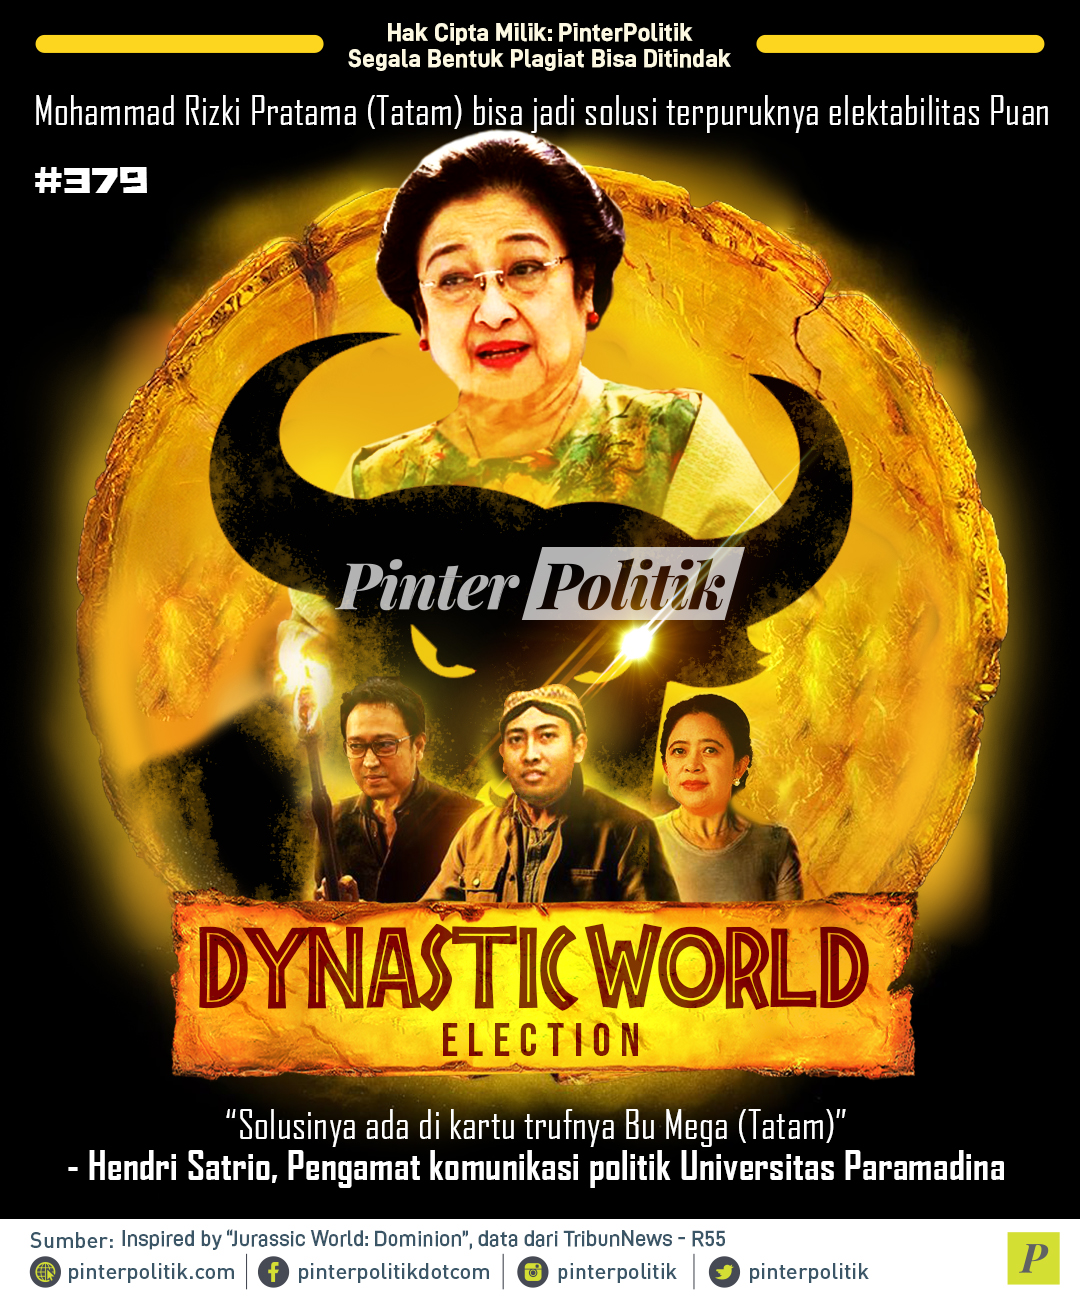 PDIP Megawati Dynastic World